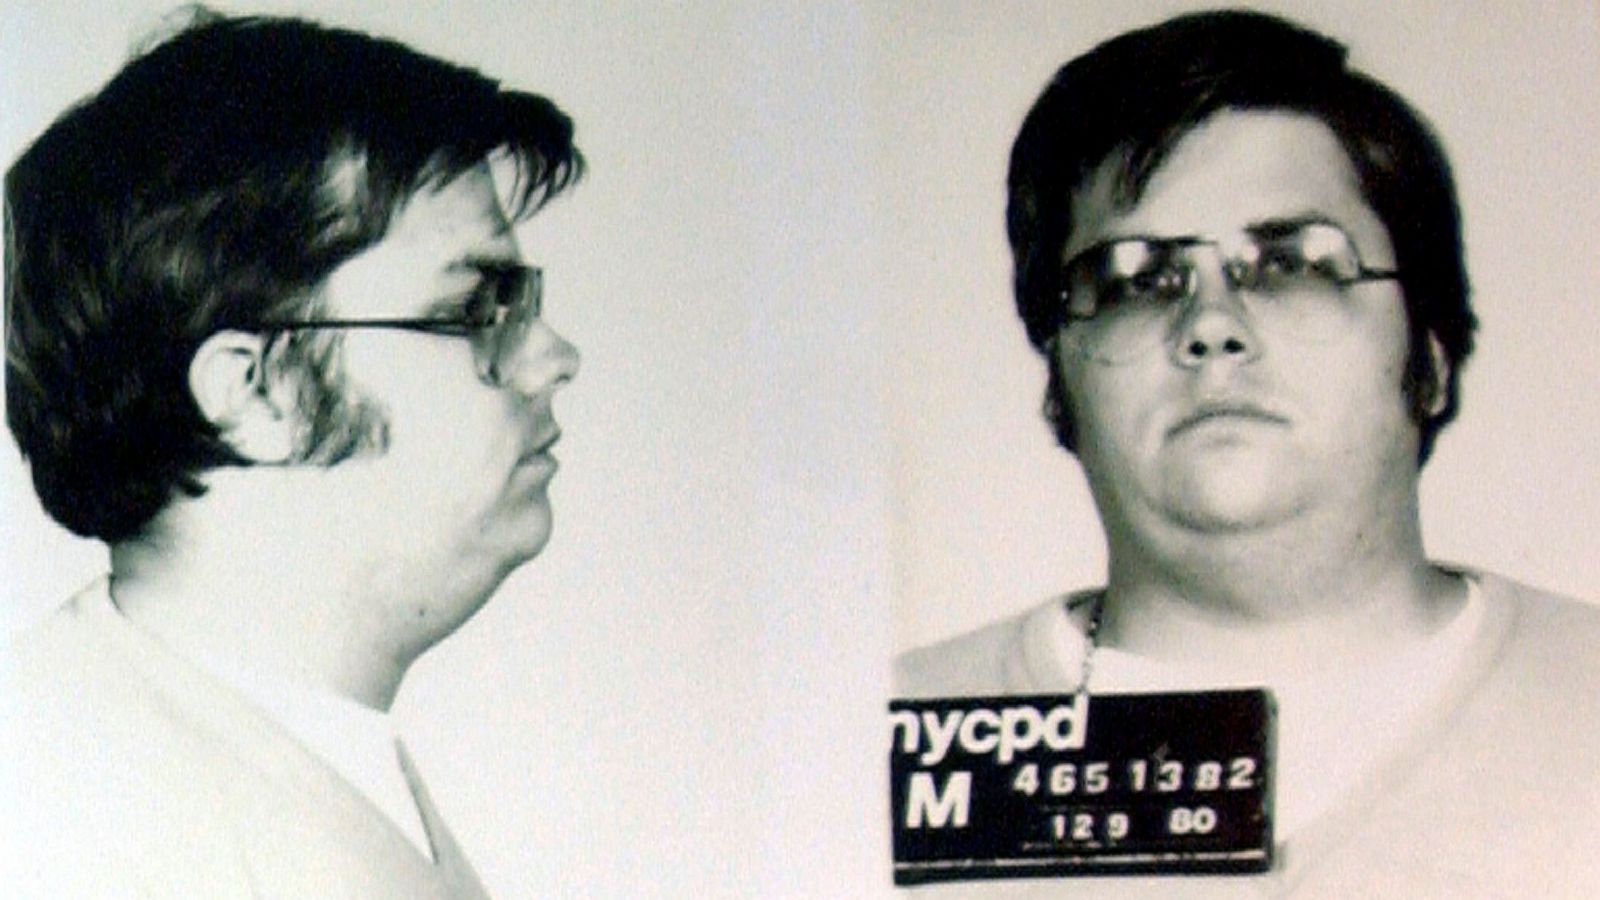 Did John Lennons killer get caught?